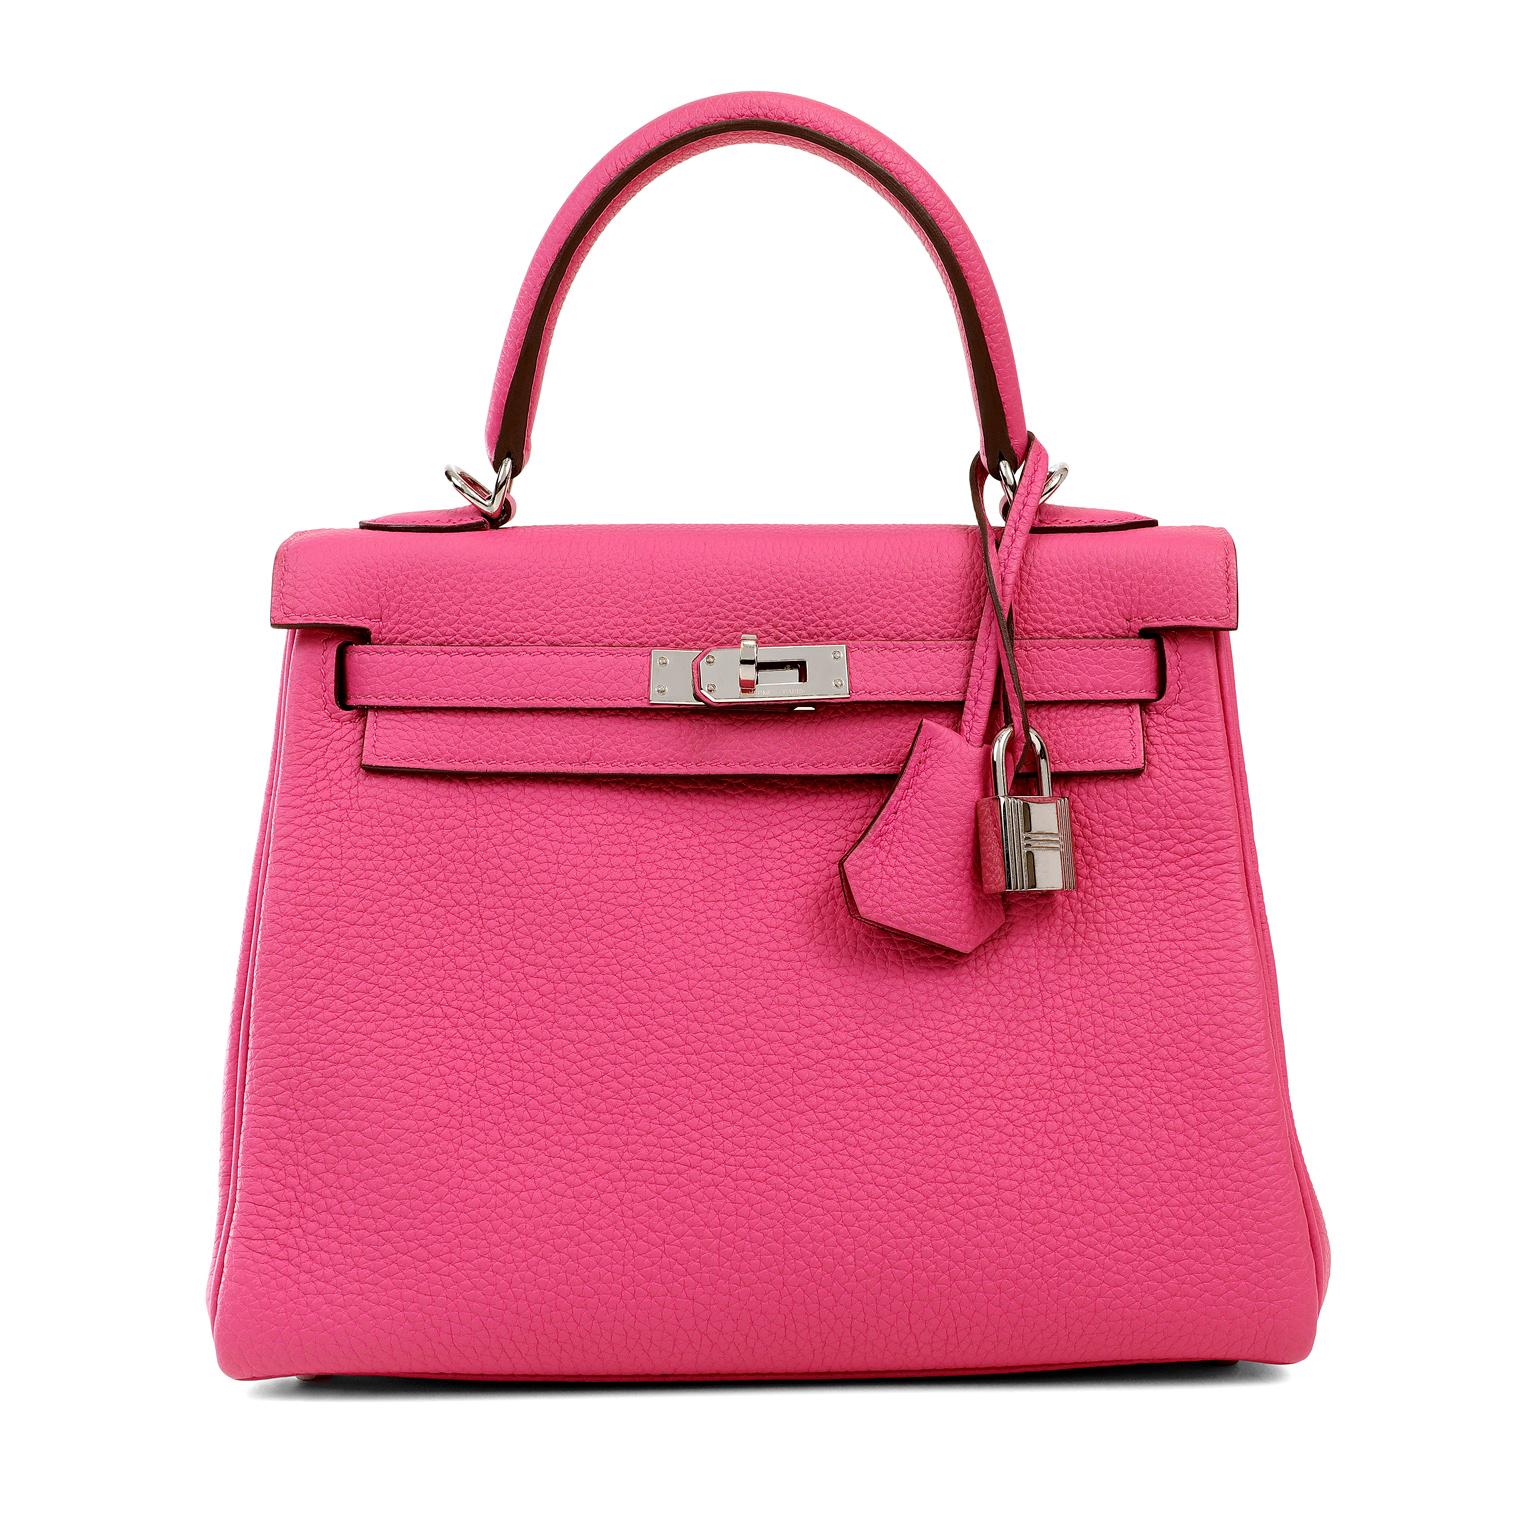 Diese authentische Hermès Pink Magnolia Togo 25 cm Kelly ist in tadellosem Zustand.   Hermès-Taschen gelten weltweit als der ultimative Luxusartikel.  Jedes Stück wird in Handarbeit hergestellt, und die Wartelisten können ein Jahr oder länger